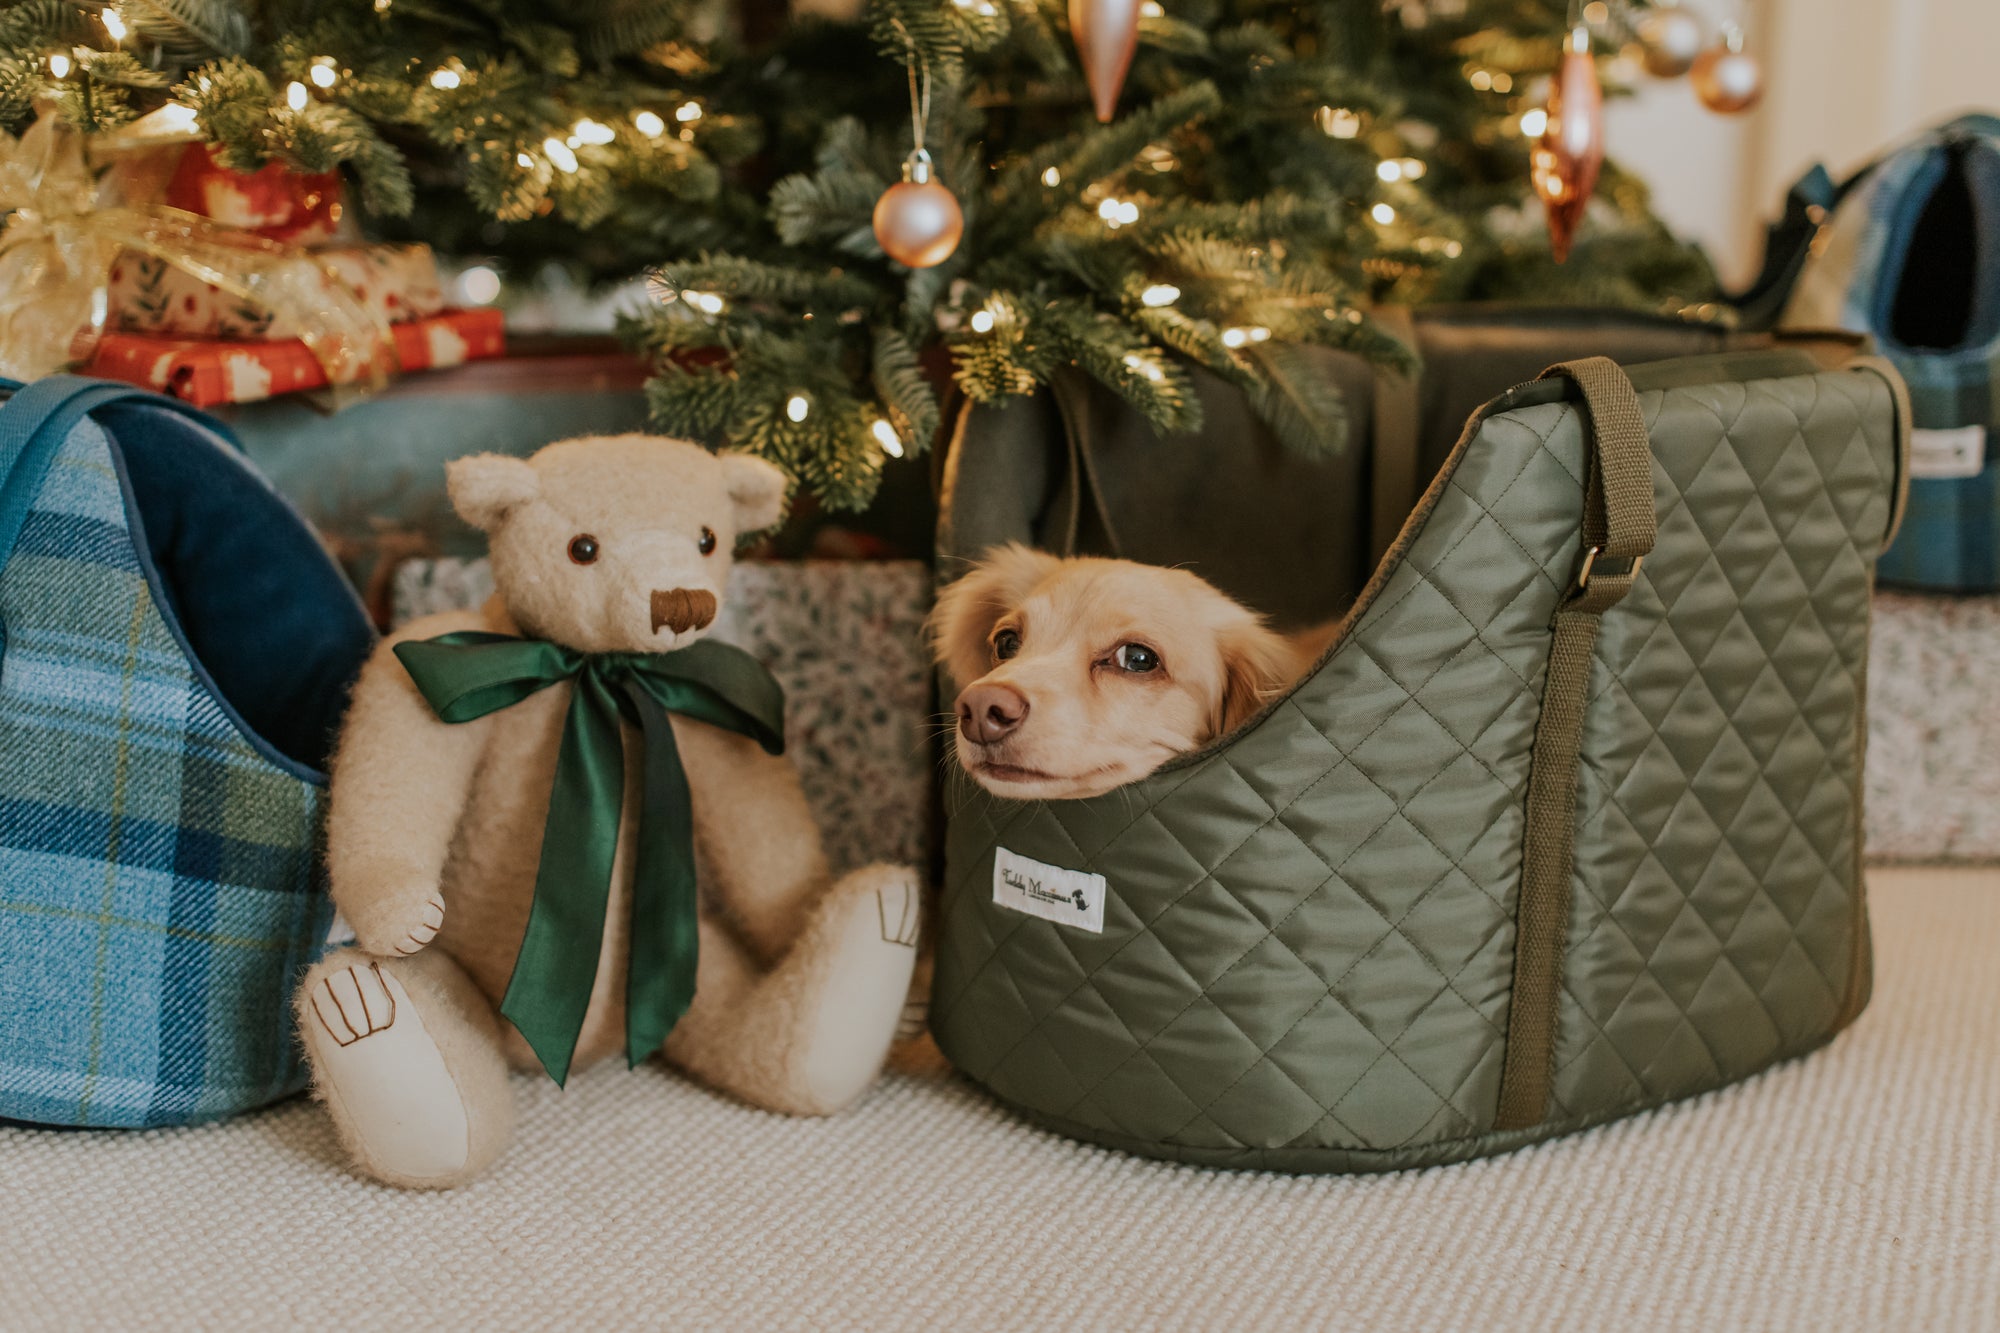 dachshund in dog carrier by Teddy Maximus